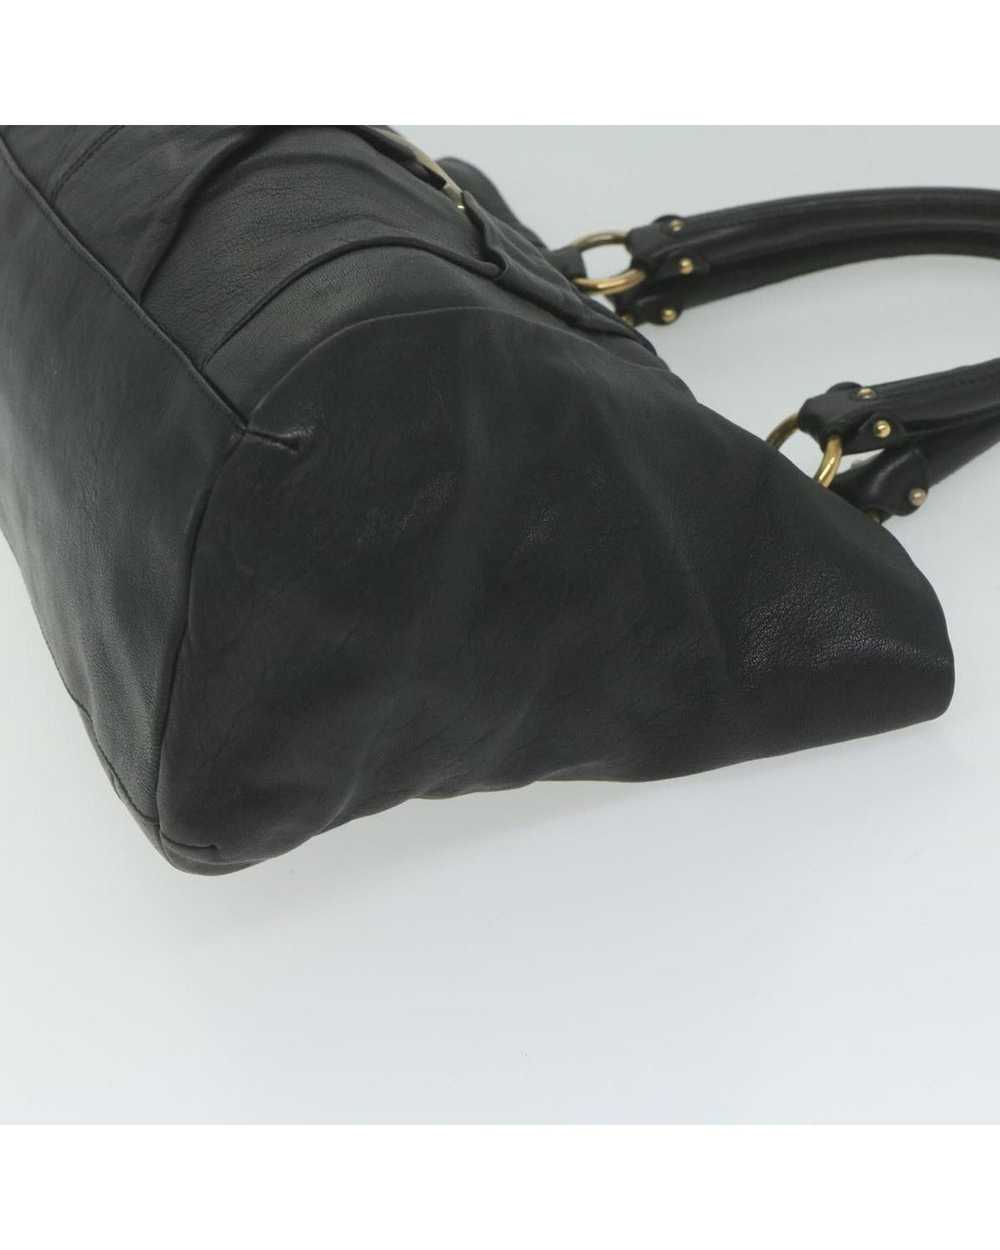 Salvatore Ferragamo Black Leather Tote Bag by Ita… - image 4